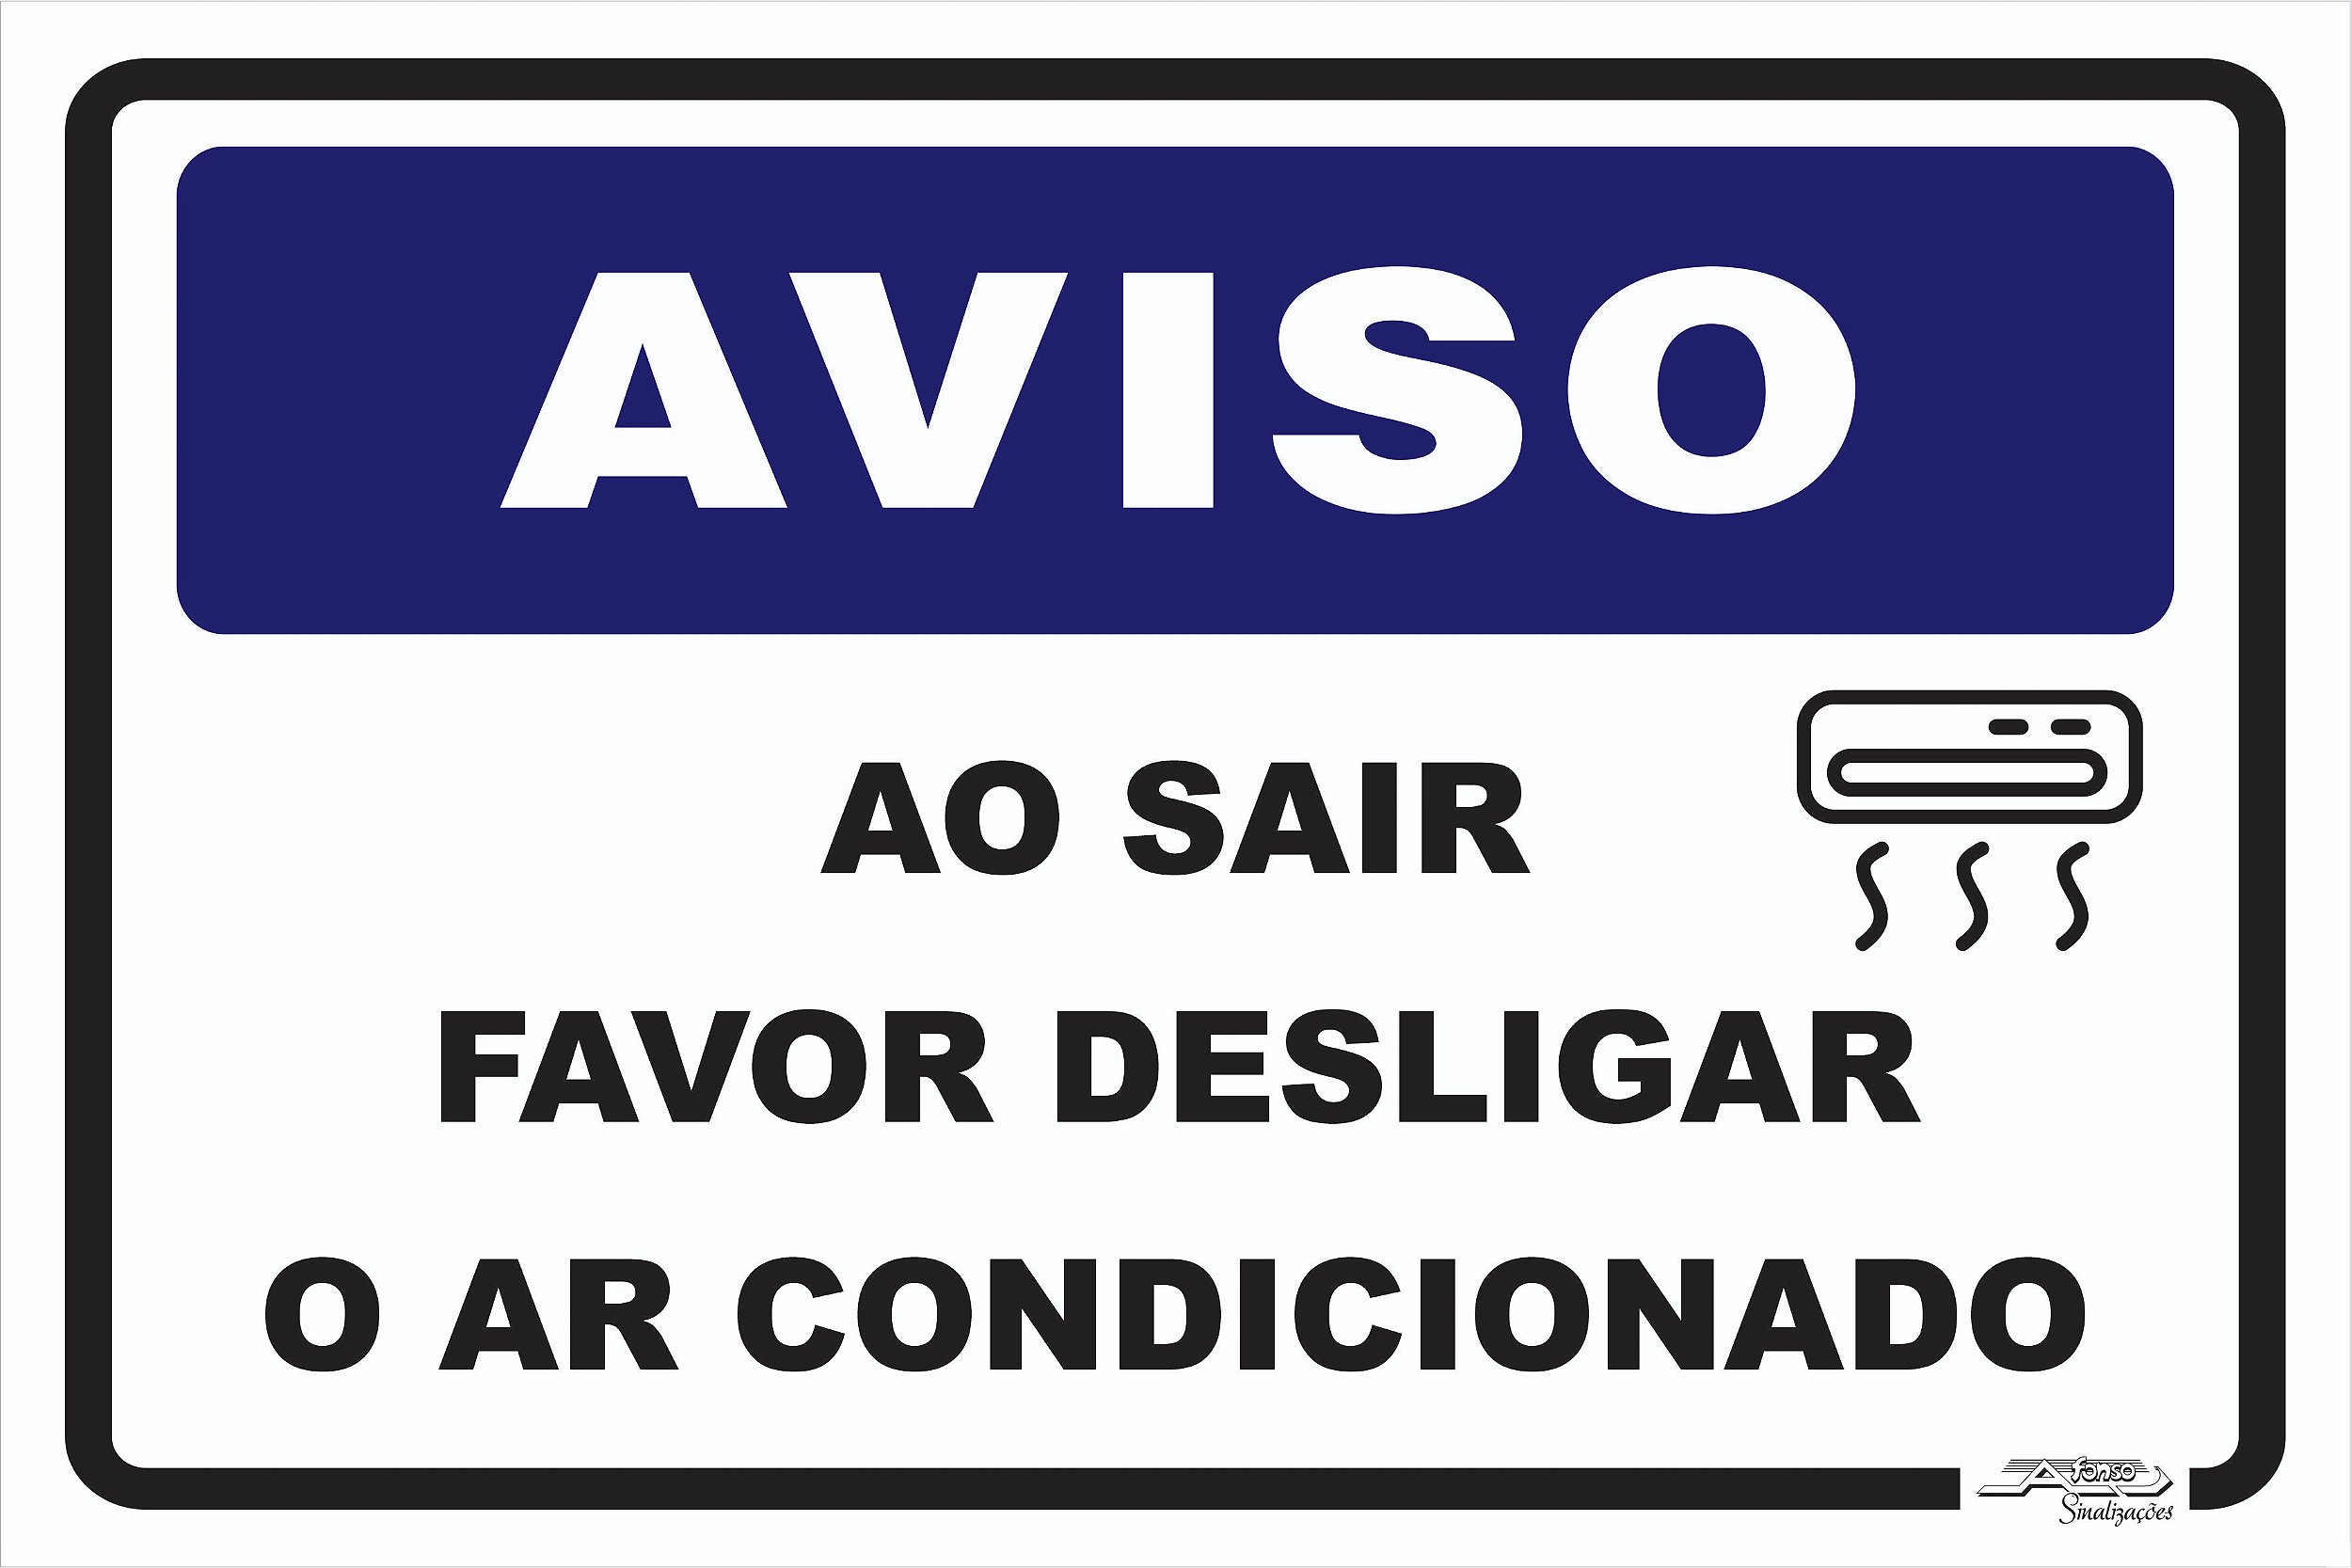 Placa Aviso Ao Sair Favor Desligar o ar Condicionado - Afonso Adesivos